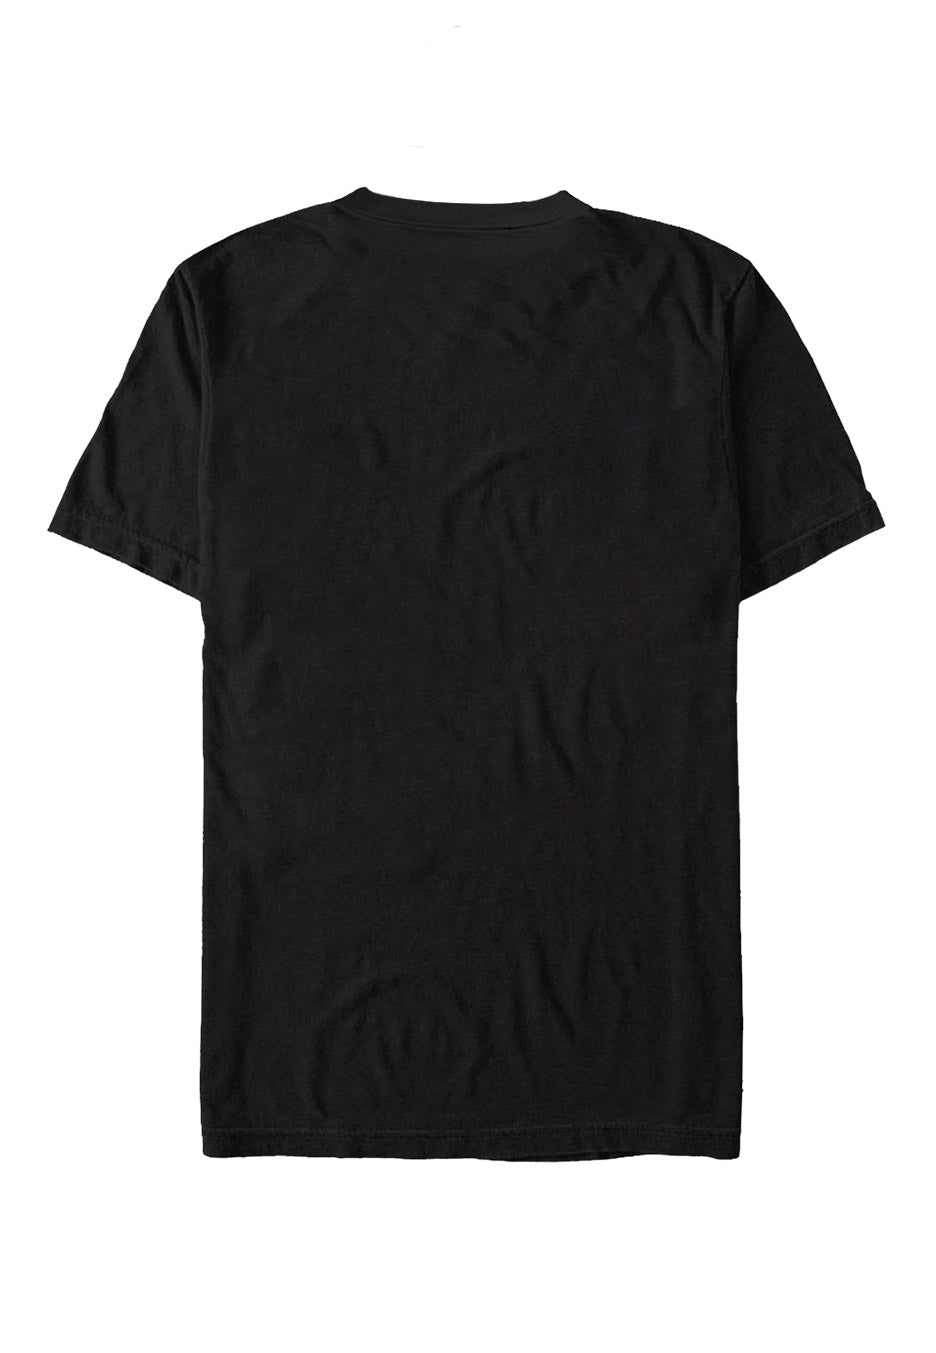 Five Finger Death Punch - Lady Muerta - T-Shirt